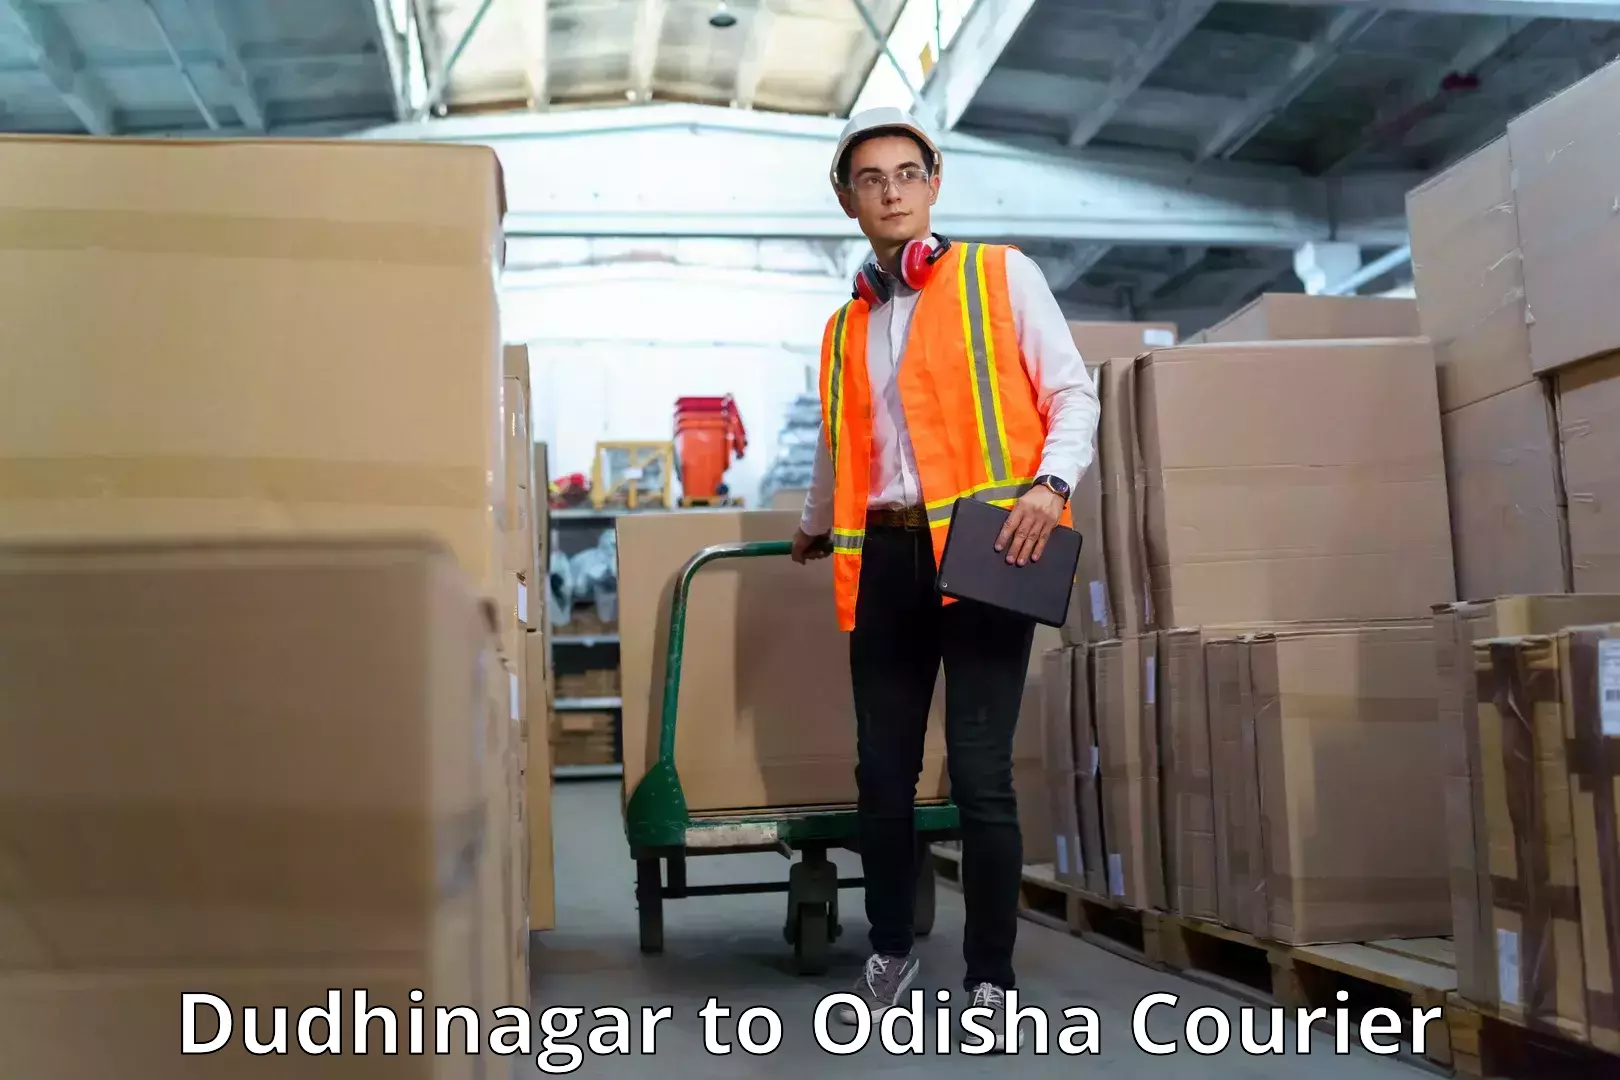 Quality courier services Dudhinagar to Komana